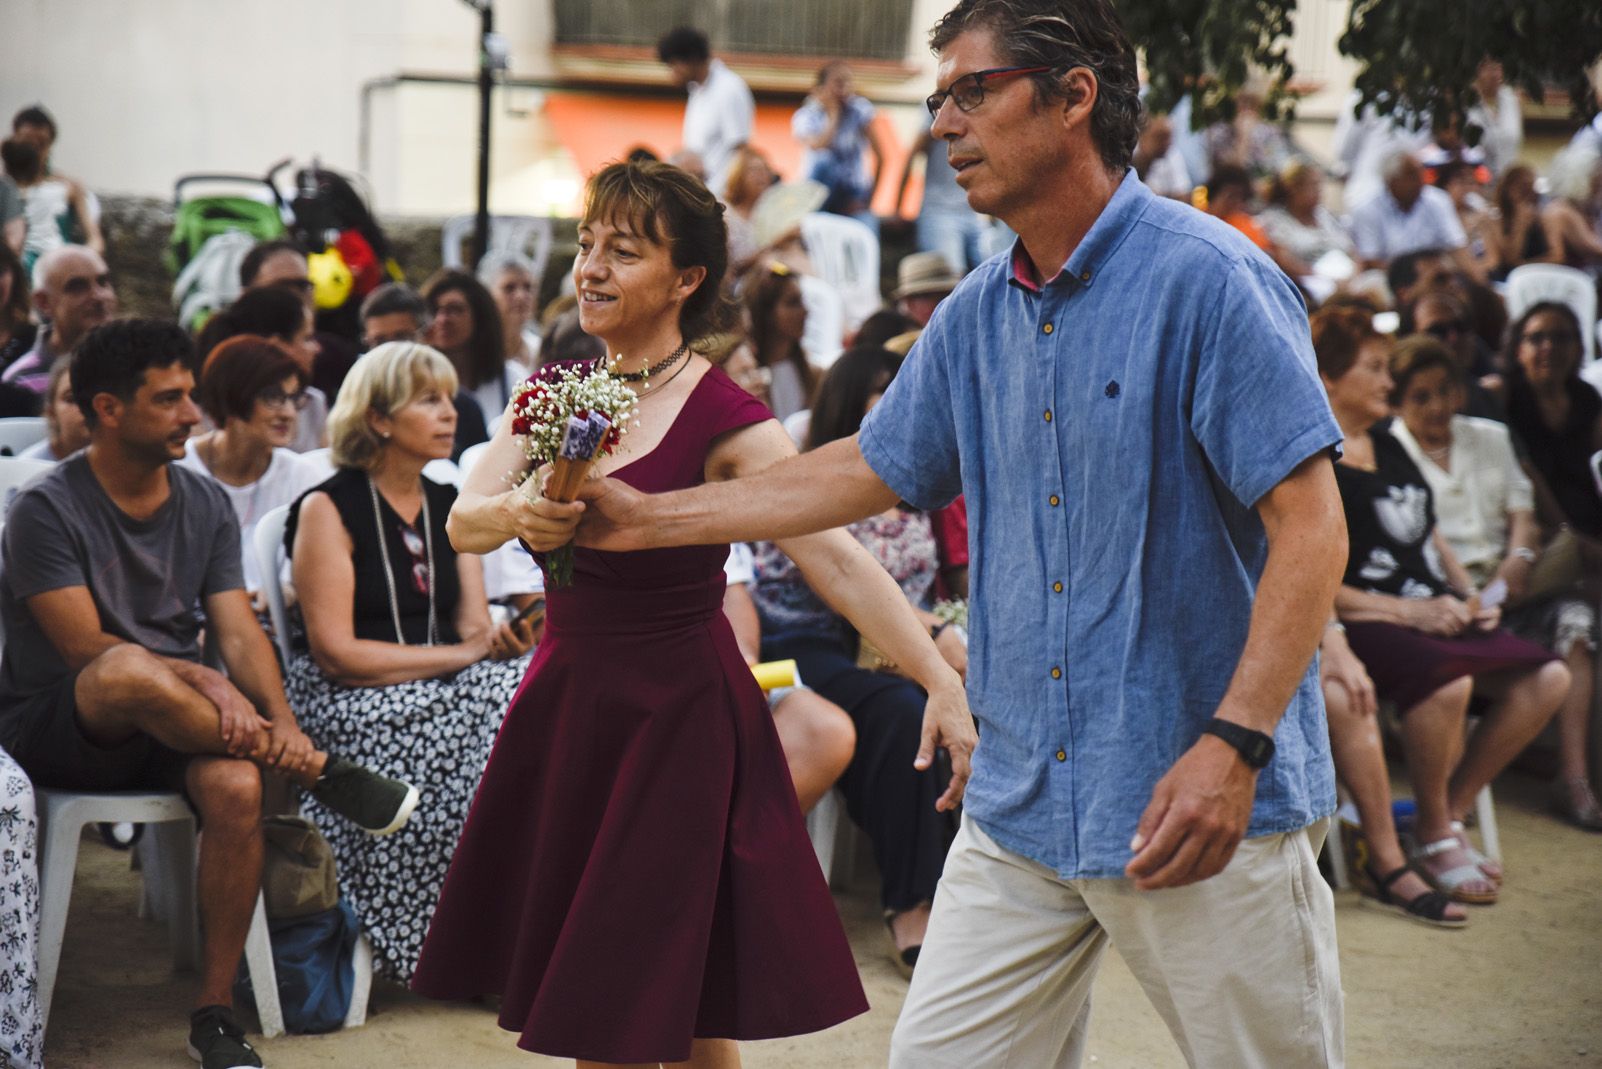 "Paga-li, Joan" El ball del vano i el ram. Foto: Bernat Millet.